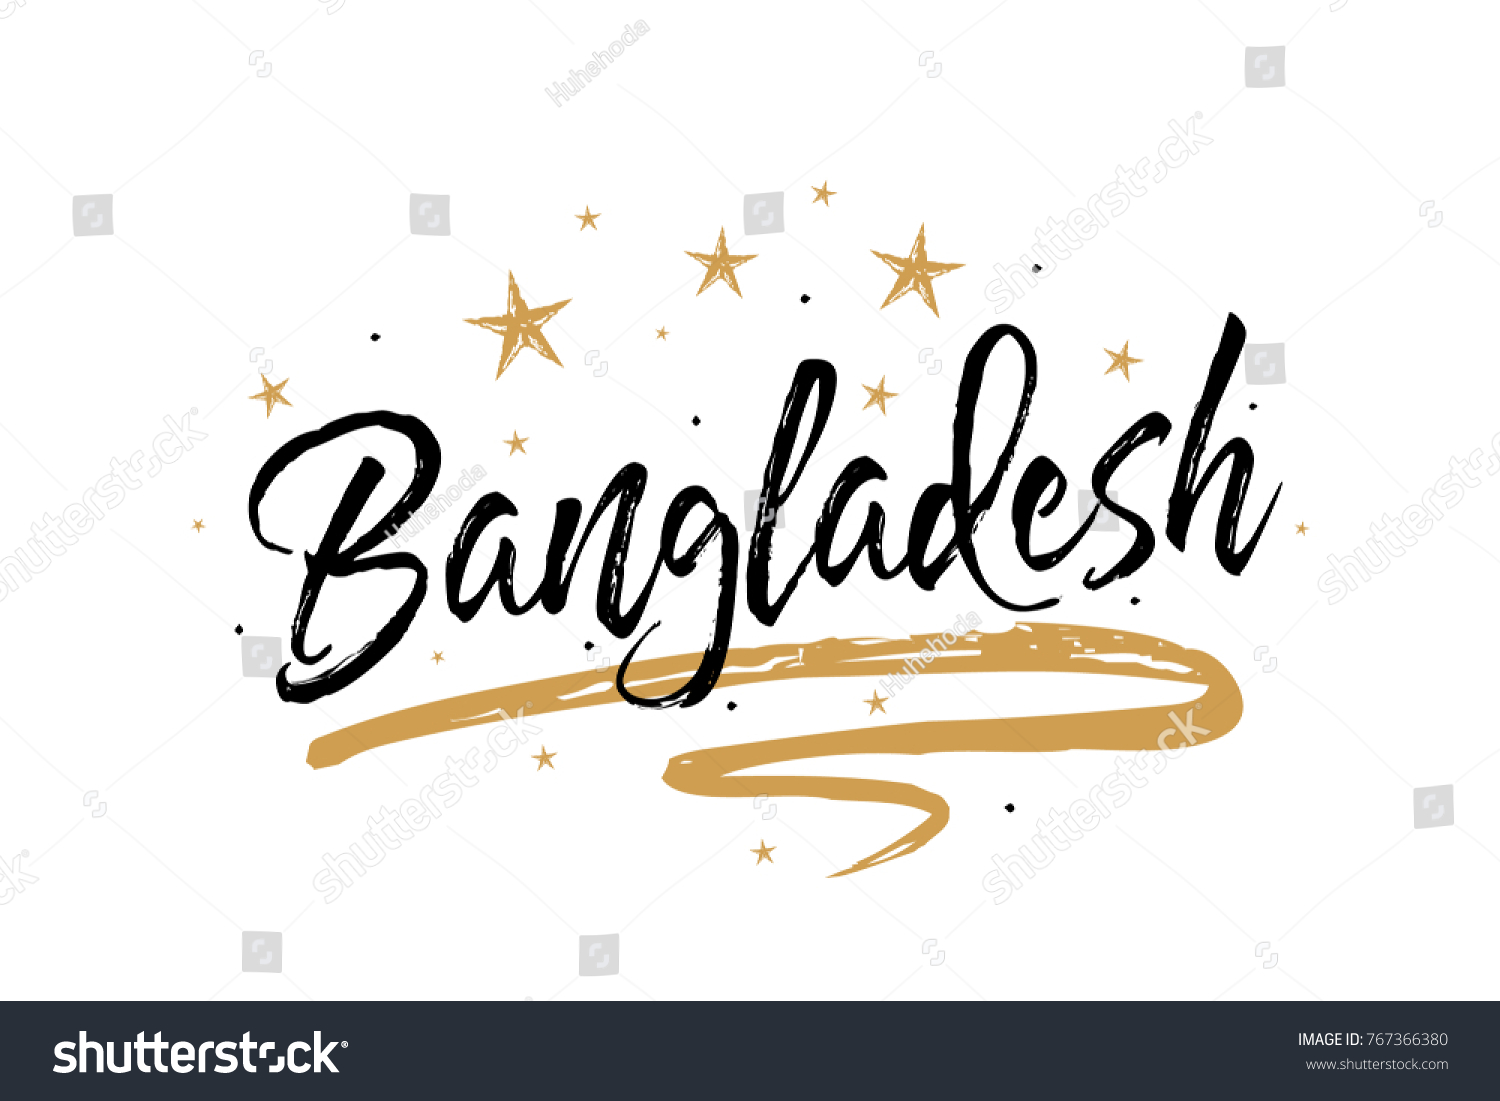 Image result for bangladesh name